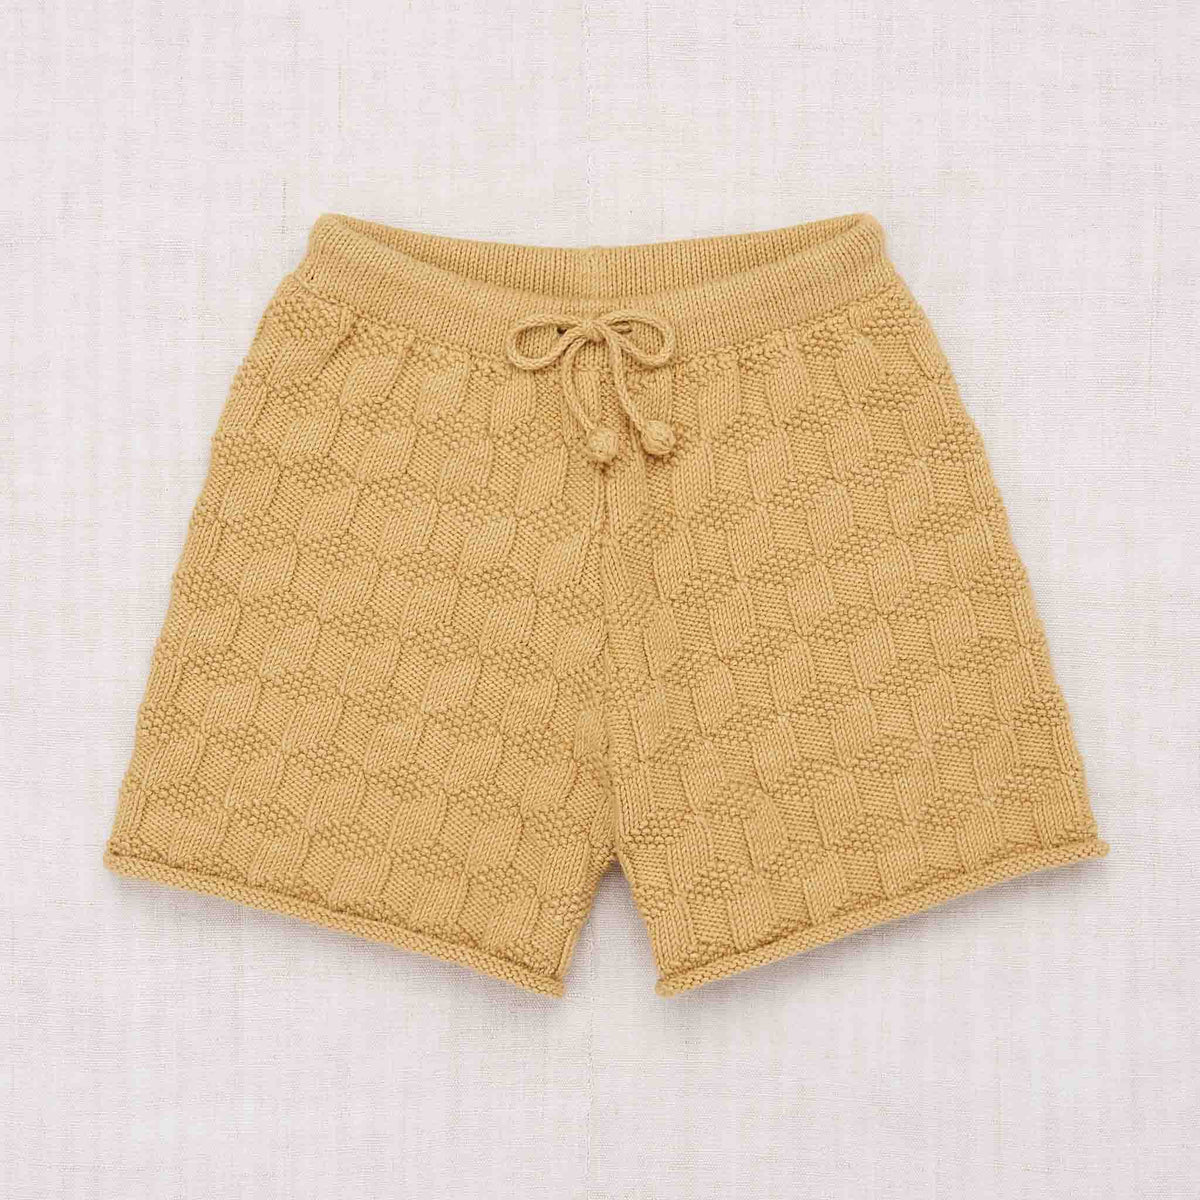 pattern-boxer-shorts-root_01.jpg